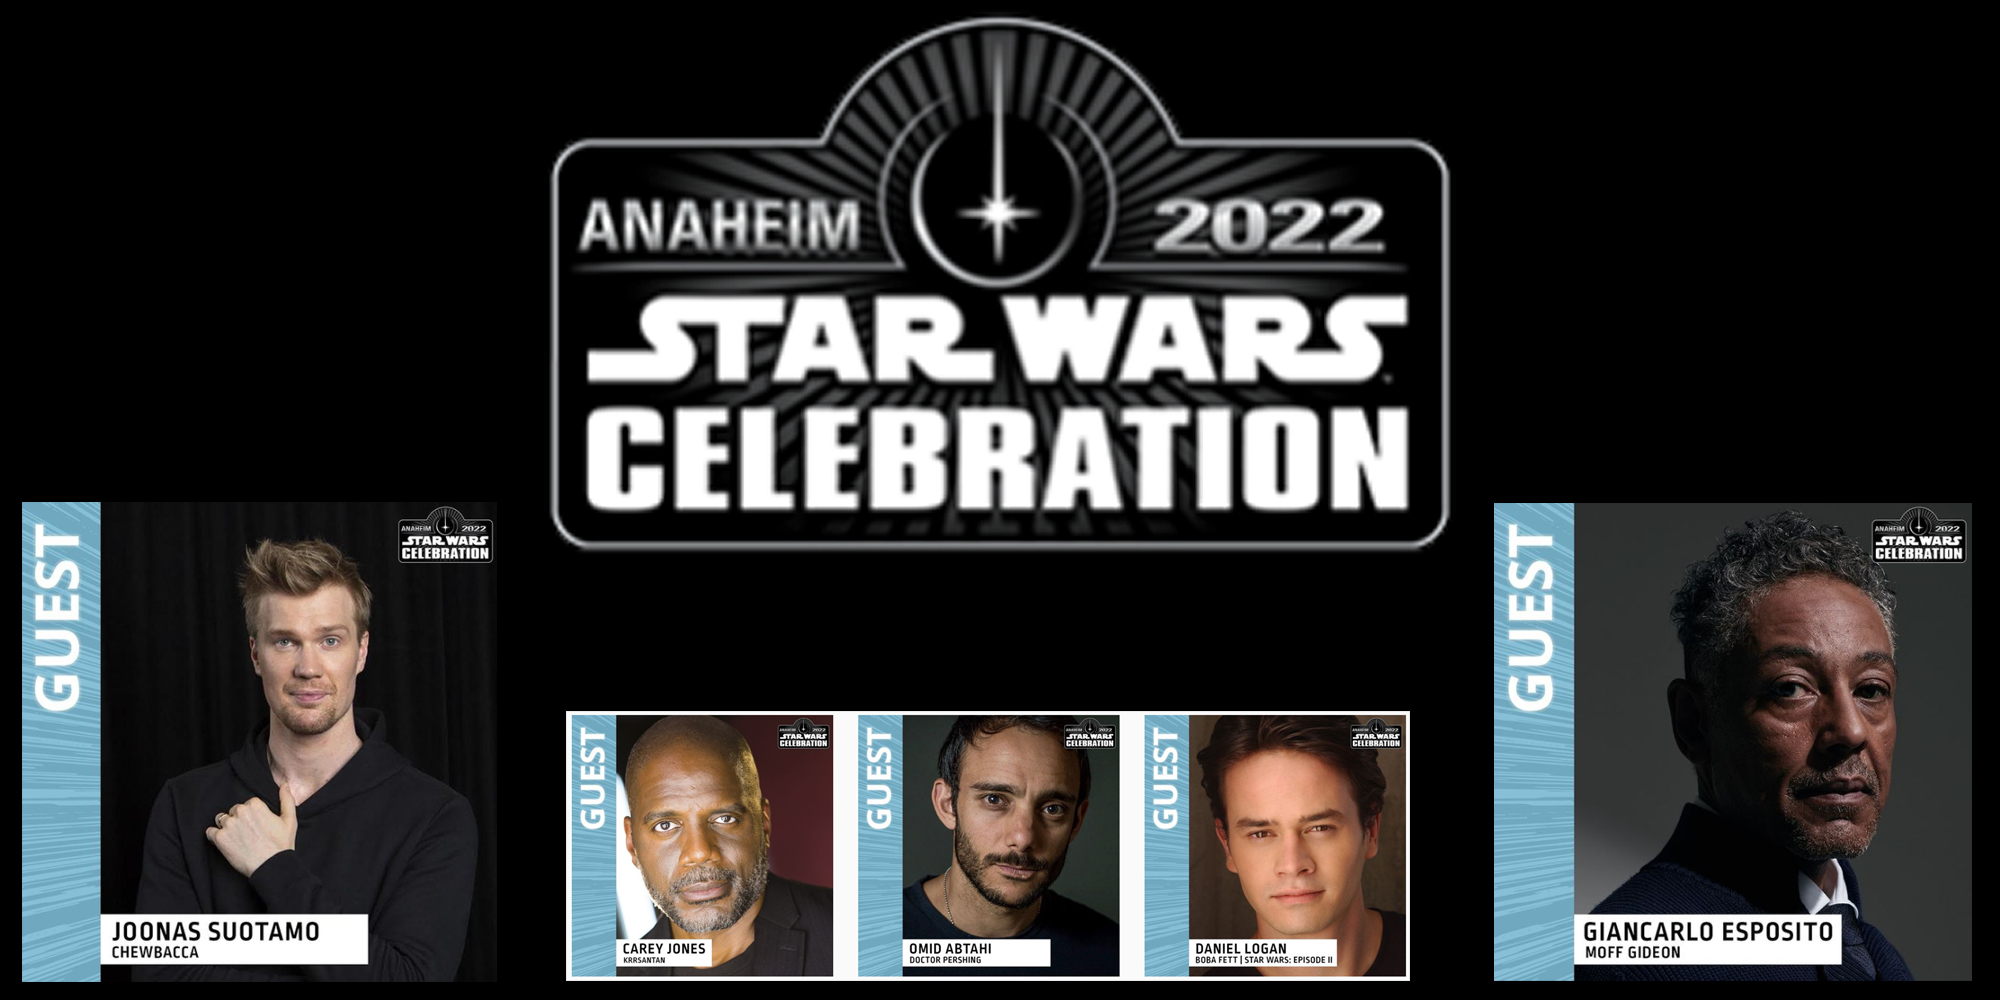 Star Wars Celebration Anaheim 2022